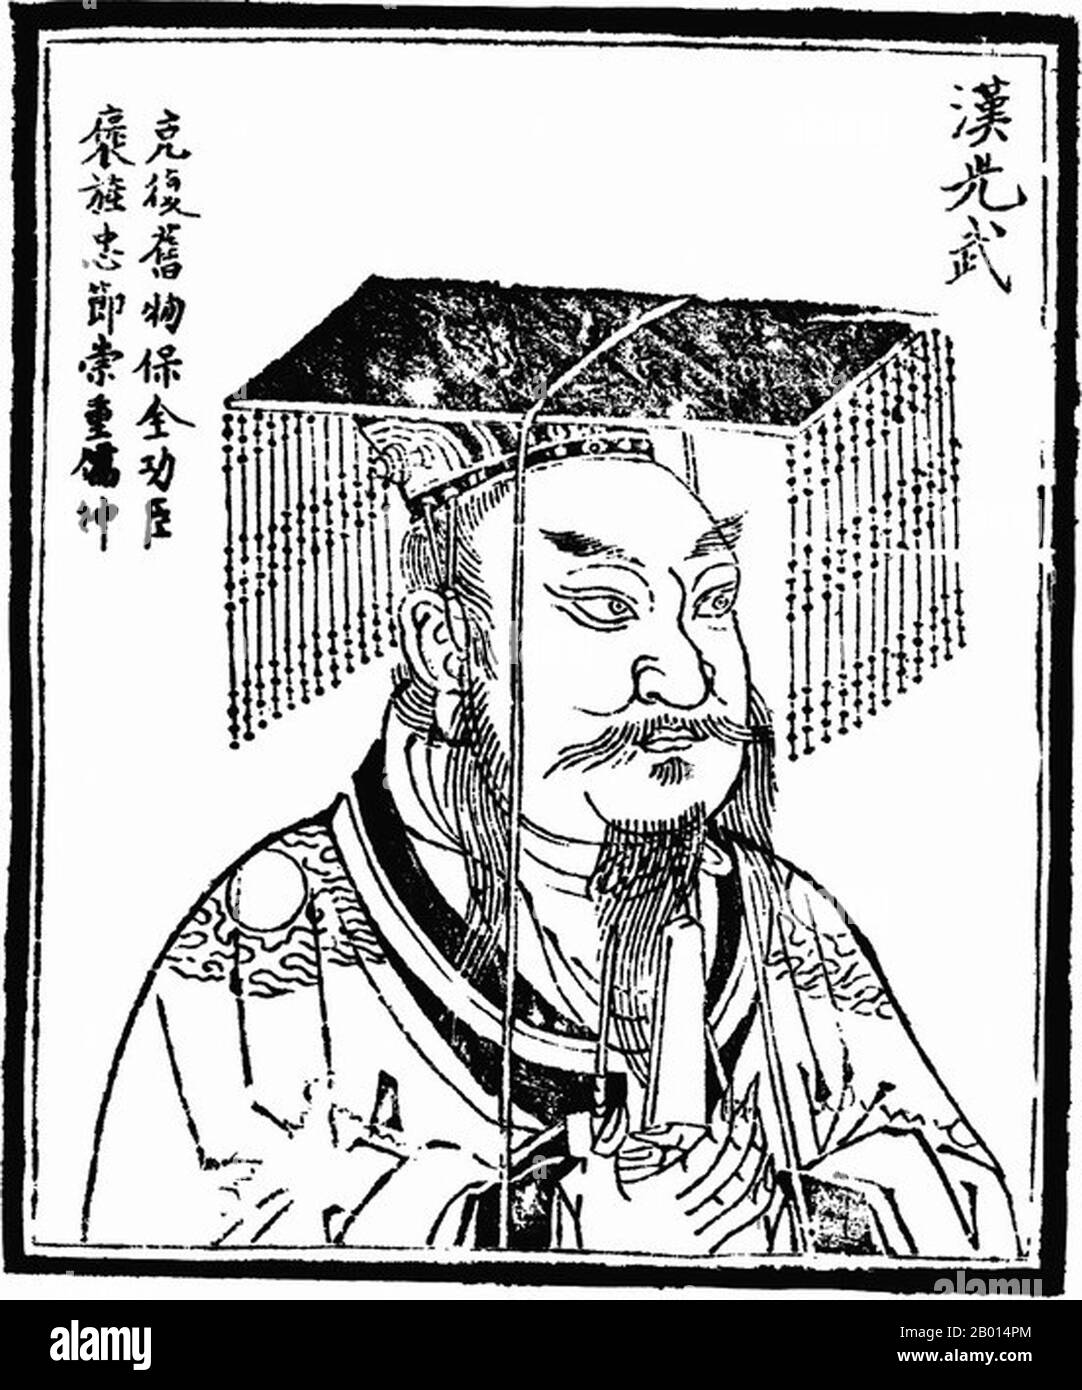 Cina: Imperatore Guangwu (15 gennaio 5 a.C. - 29 marzo 57 d.C.), fondatore e primo imperatore della dinastia Han orientale (r. 5 agosto 25 - 29 marzo 57 CE). Illustrazione, c. 1498. L'imperatore Guangwu, nato Liu Xiu e nome di cortesia Wenshu, fu un imperatore della dinastia Han, che restaurò la dinastia nel 25 d.C. e fu così fondatore della successiva dinastia Han o Han orientale. Inizialmente governò parte della Cina, ma attraverso la repressione e la conquista dei signori della guerra regionali, l'intera Cina fu consolidata al momento della sua morte. Era un brillante stratega, ed era conosciuto per la sua risolutezza e misericordia. Foto Stock